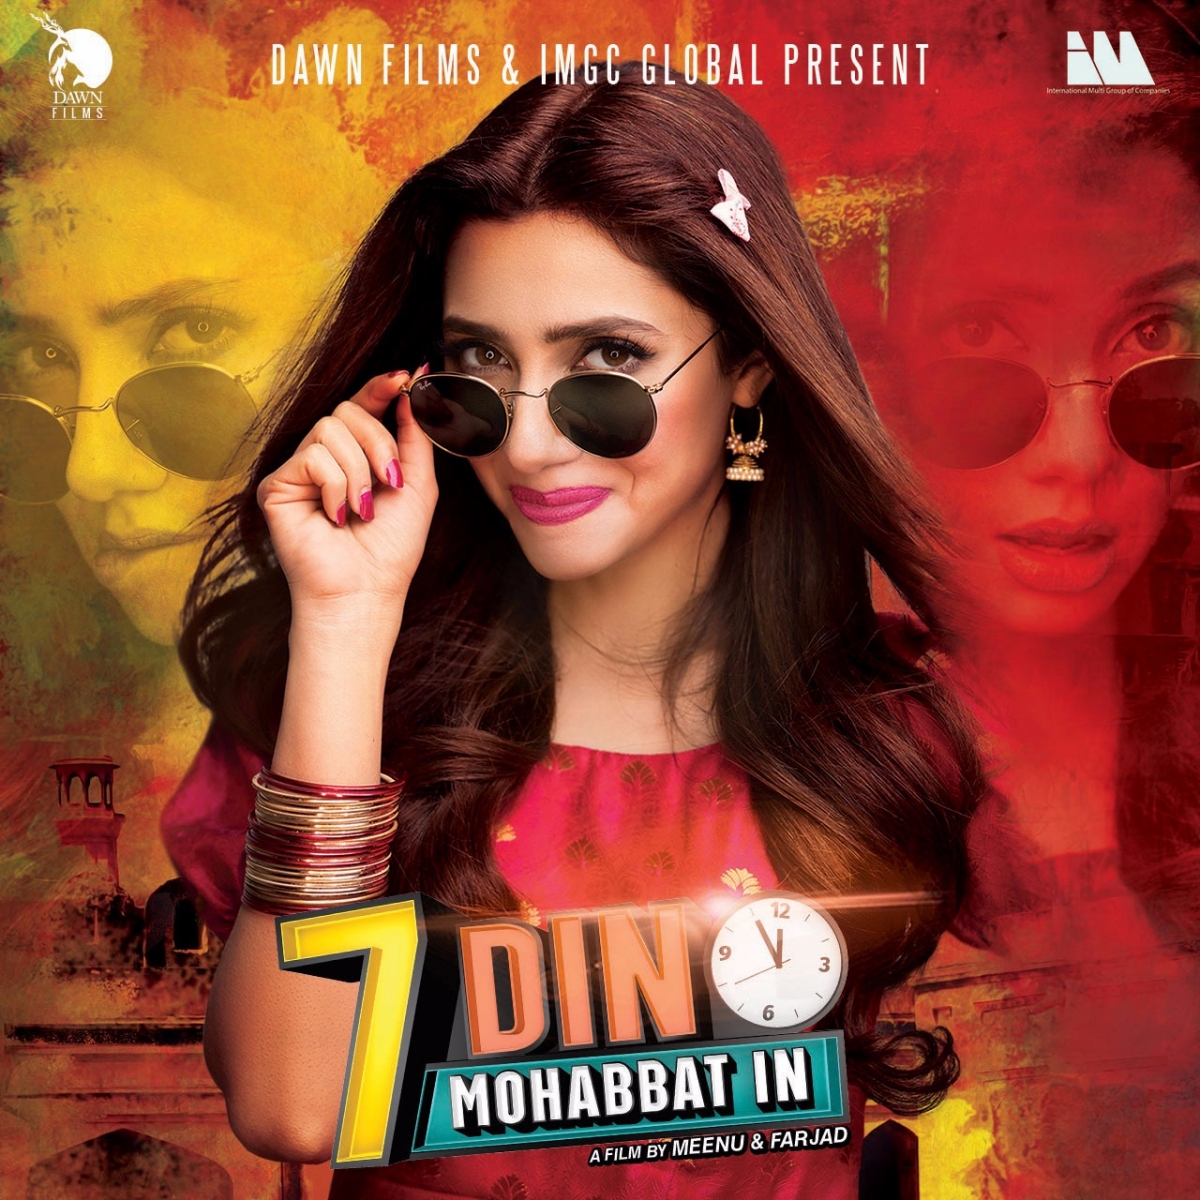 Mahira Khan’s character Neeli Revealed for 7 DIN MOHABBAT IN